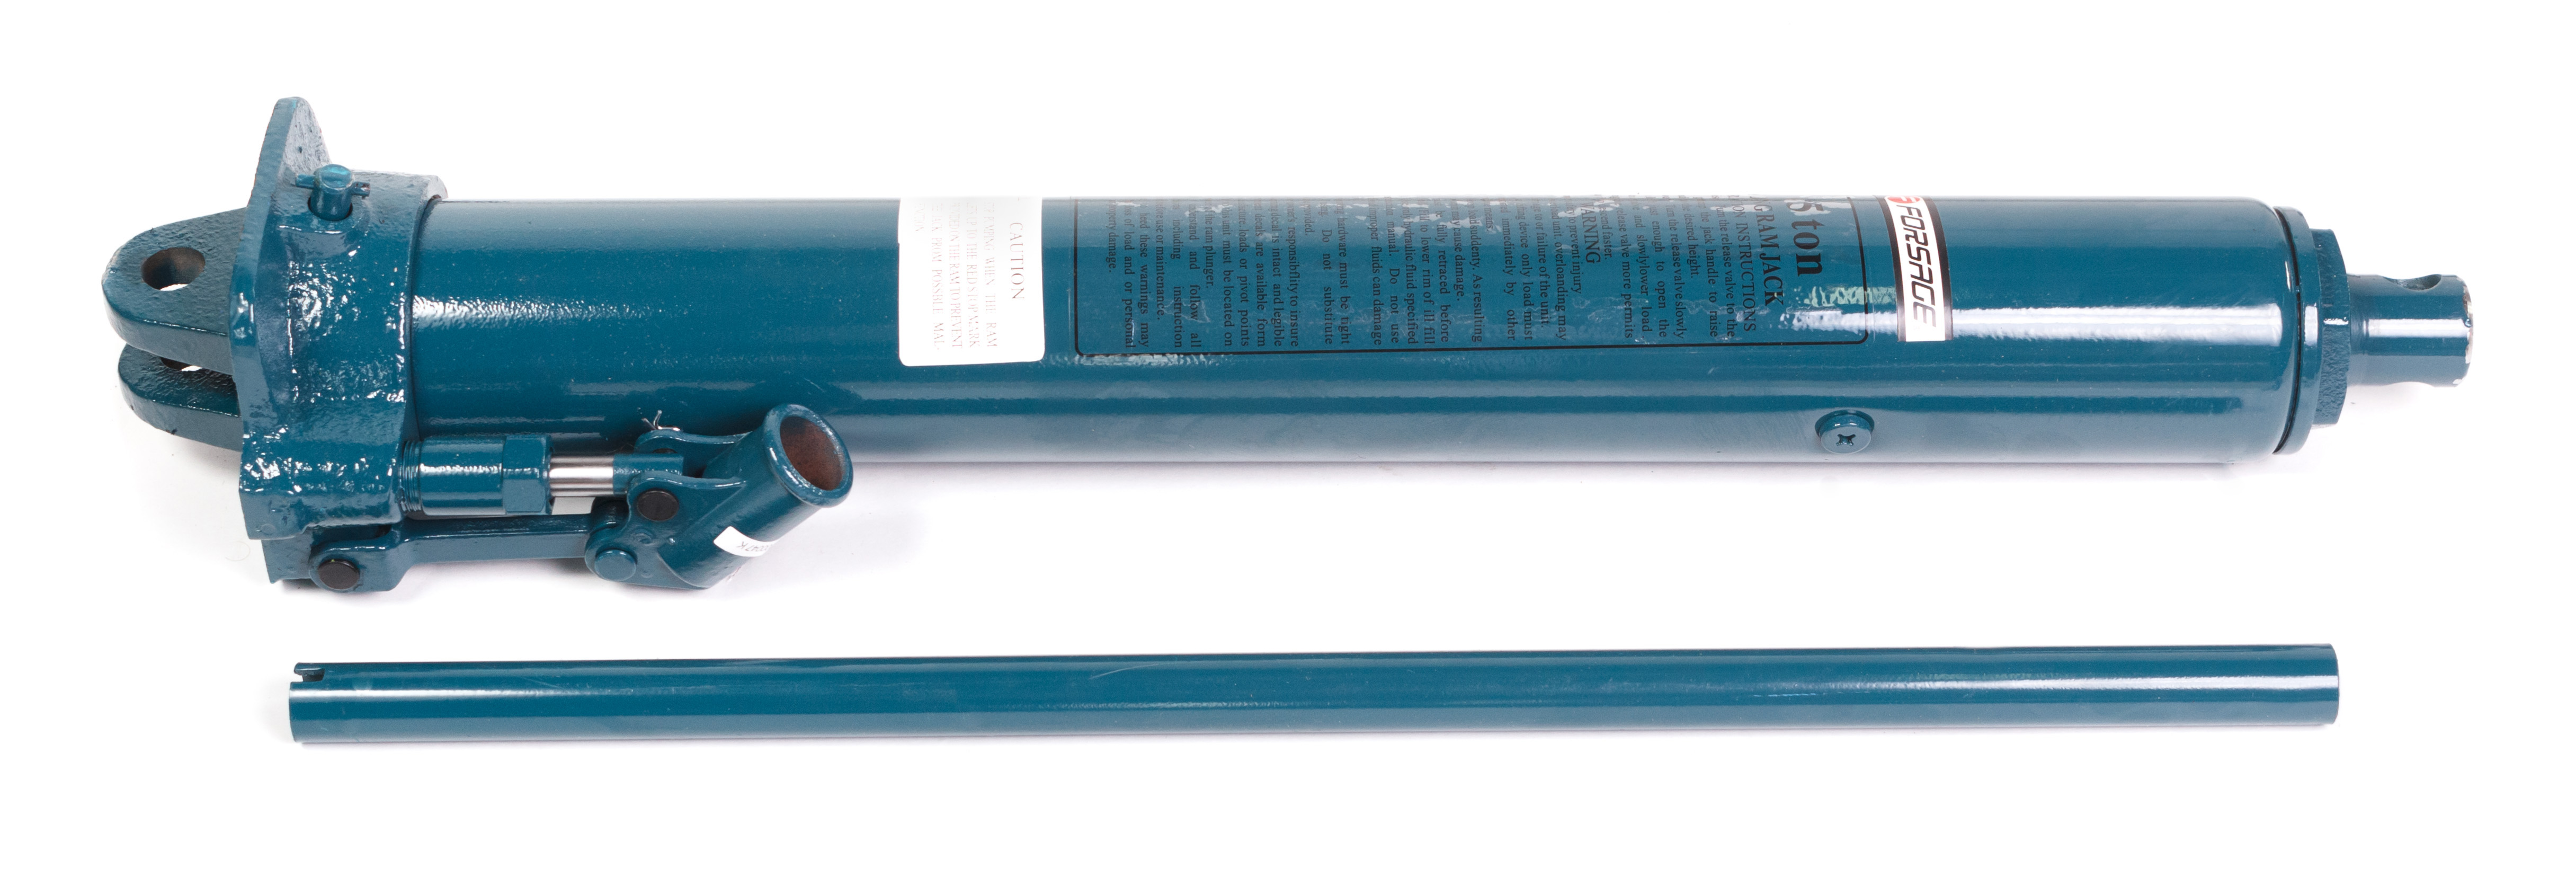 Цилиндр гидравлический удлиненный, 3т (общая длина - 620мм, ход штока - 500мм) Forsage F-1203-1